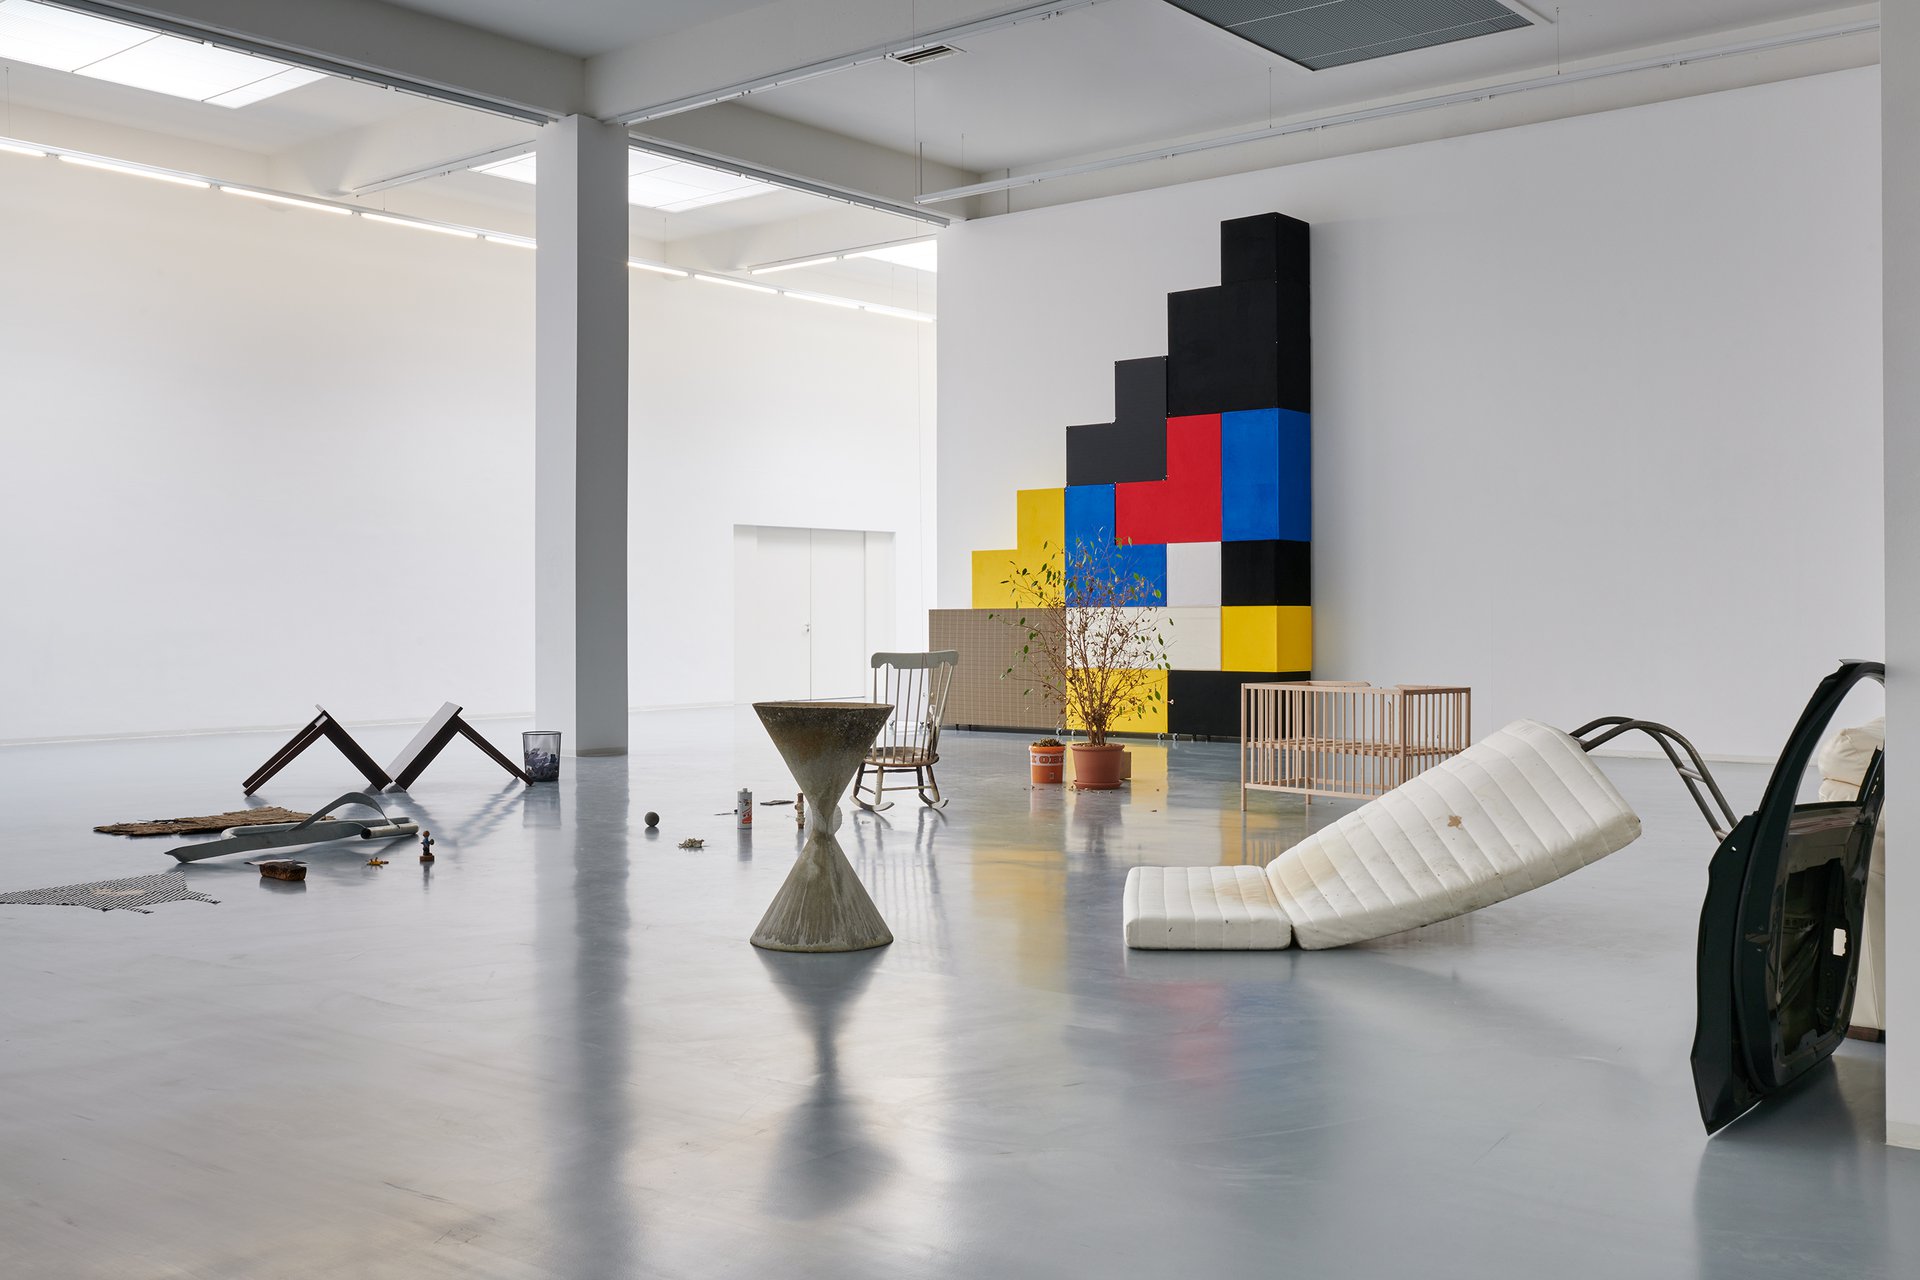 Anna-Sophie Berger: Duel, installation view, Bonner Kunstverein, 2020. Courtesy the artist, Galerie LAYR, Vienna and JTT, New York. Photo: Mareike Tocha